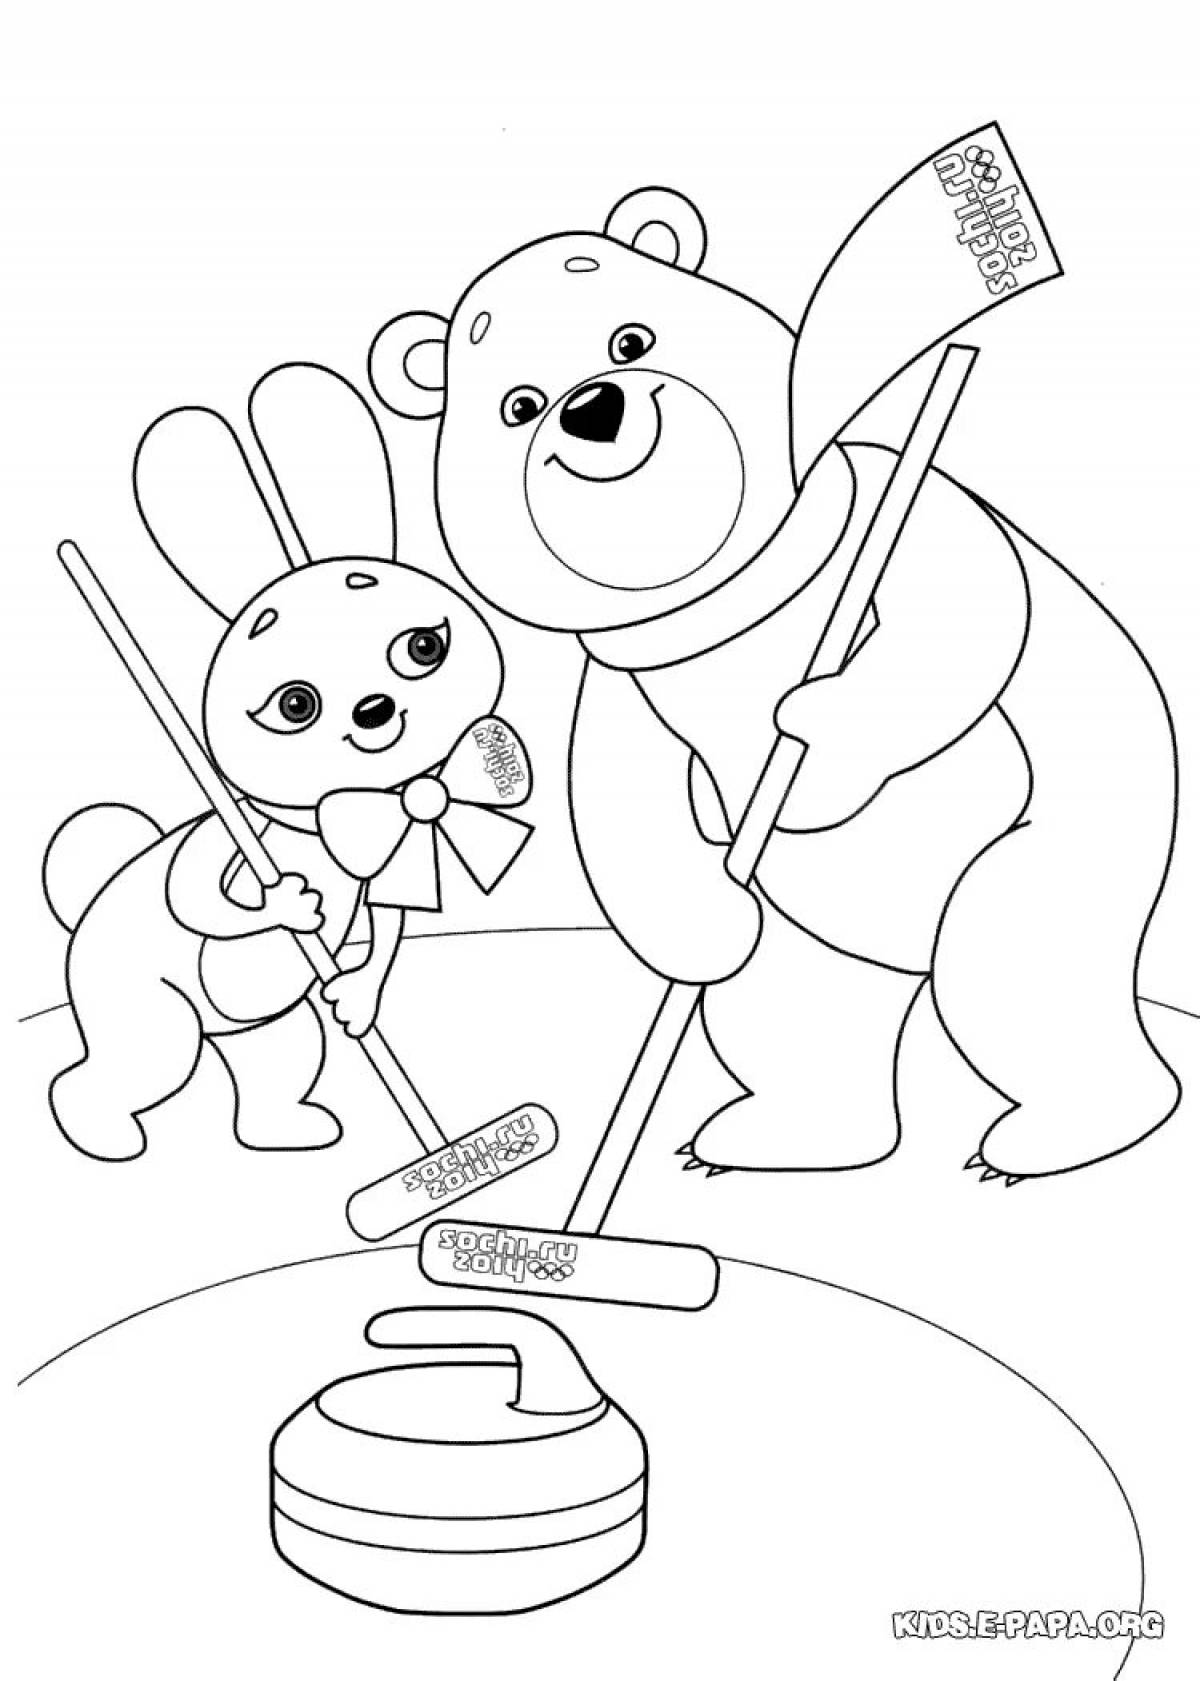 Забавная раскраска олимпийские игры для детей